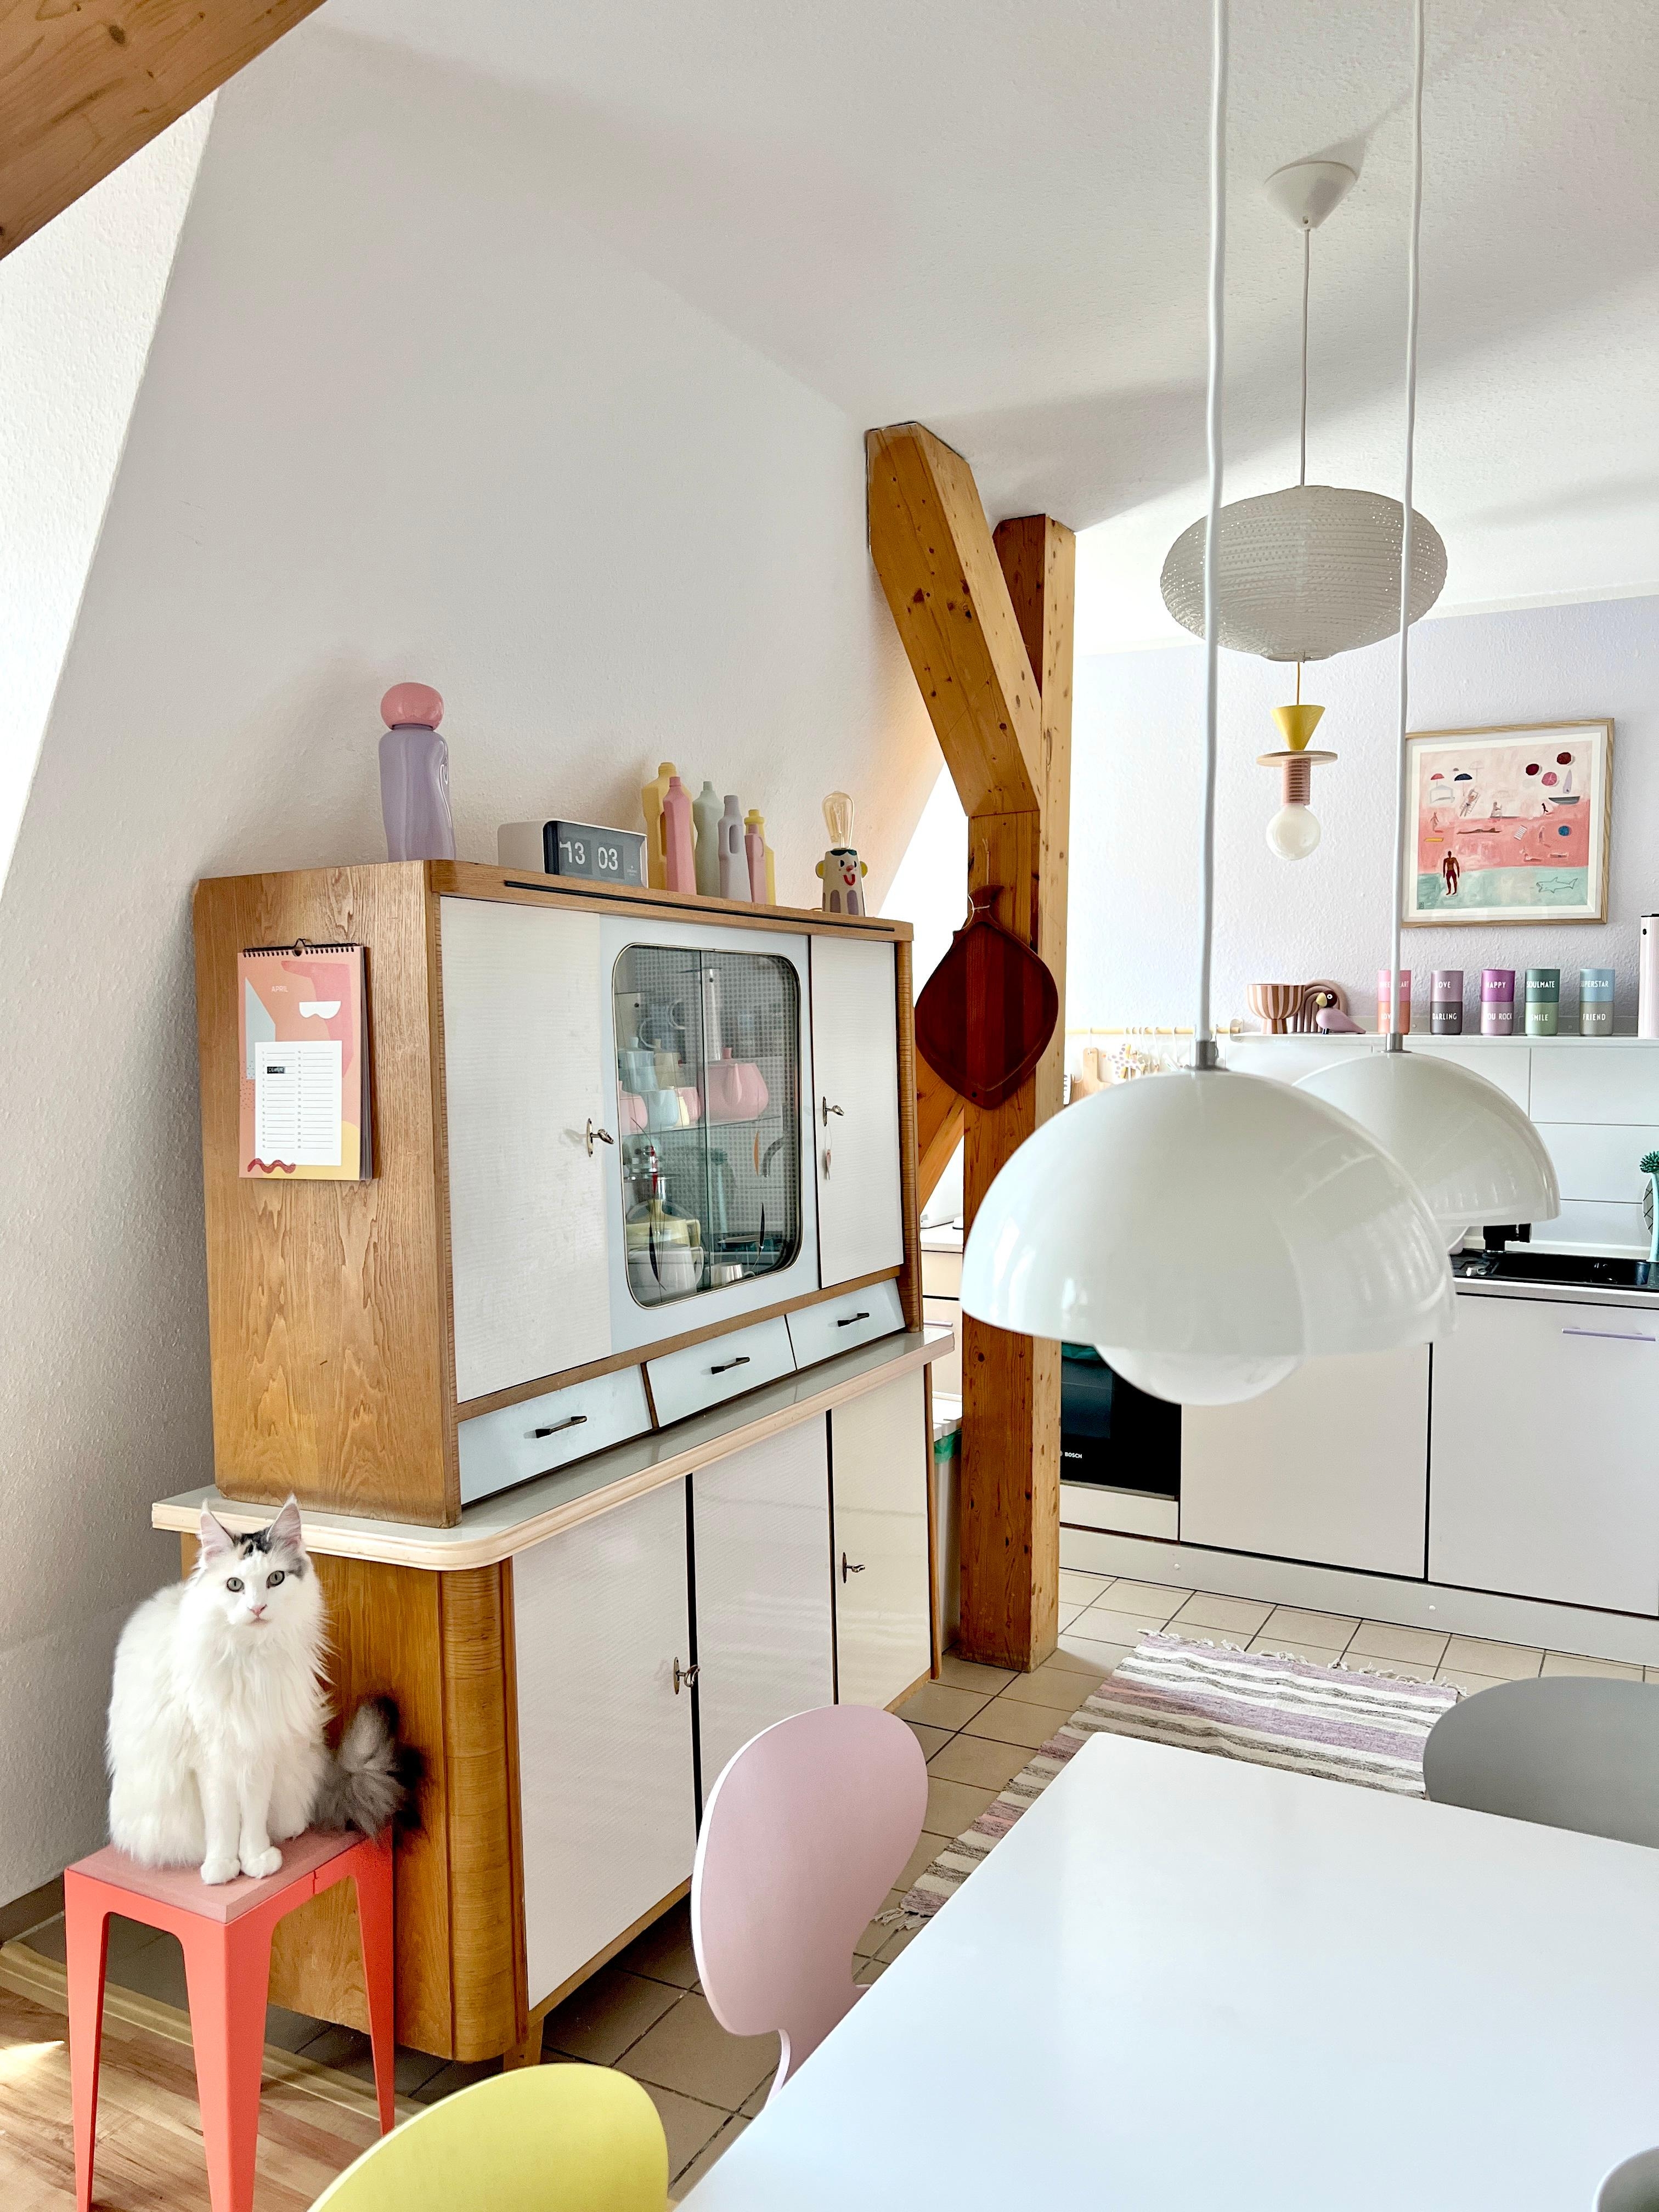 #interior #interiordesign #couchliebt #küche #pastell #buffetschrank #50er #60er #vintage #katze #mainecoon #flowerpot 